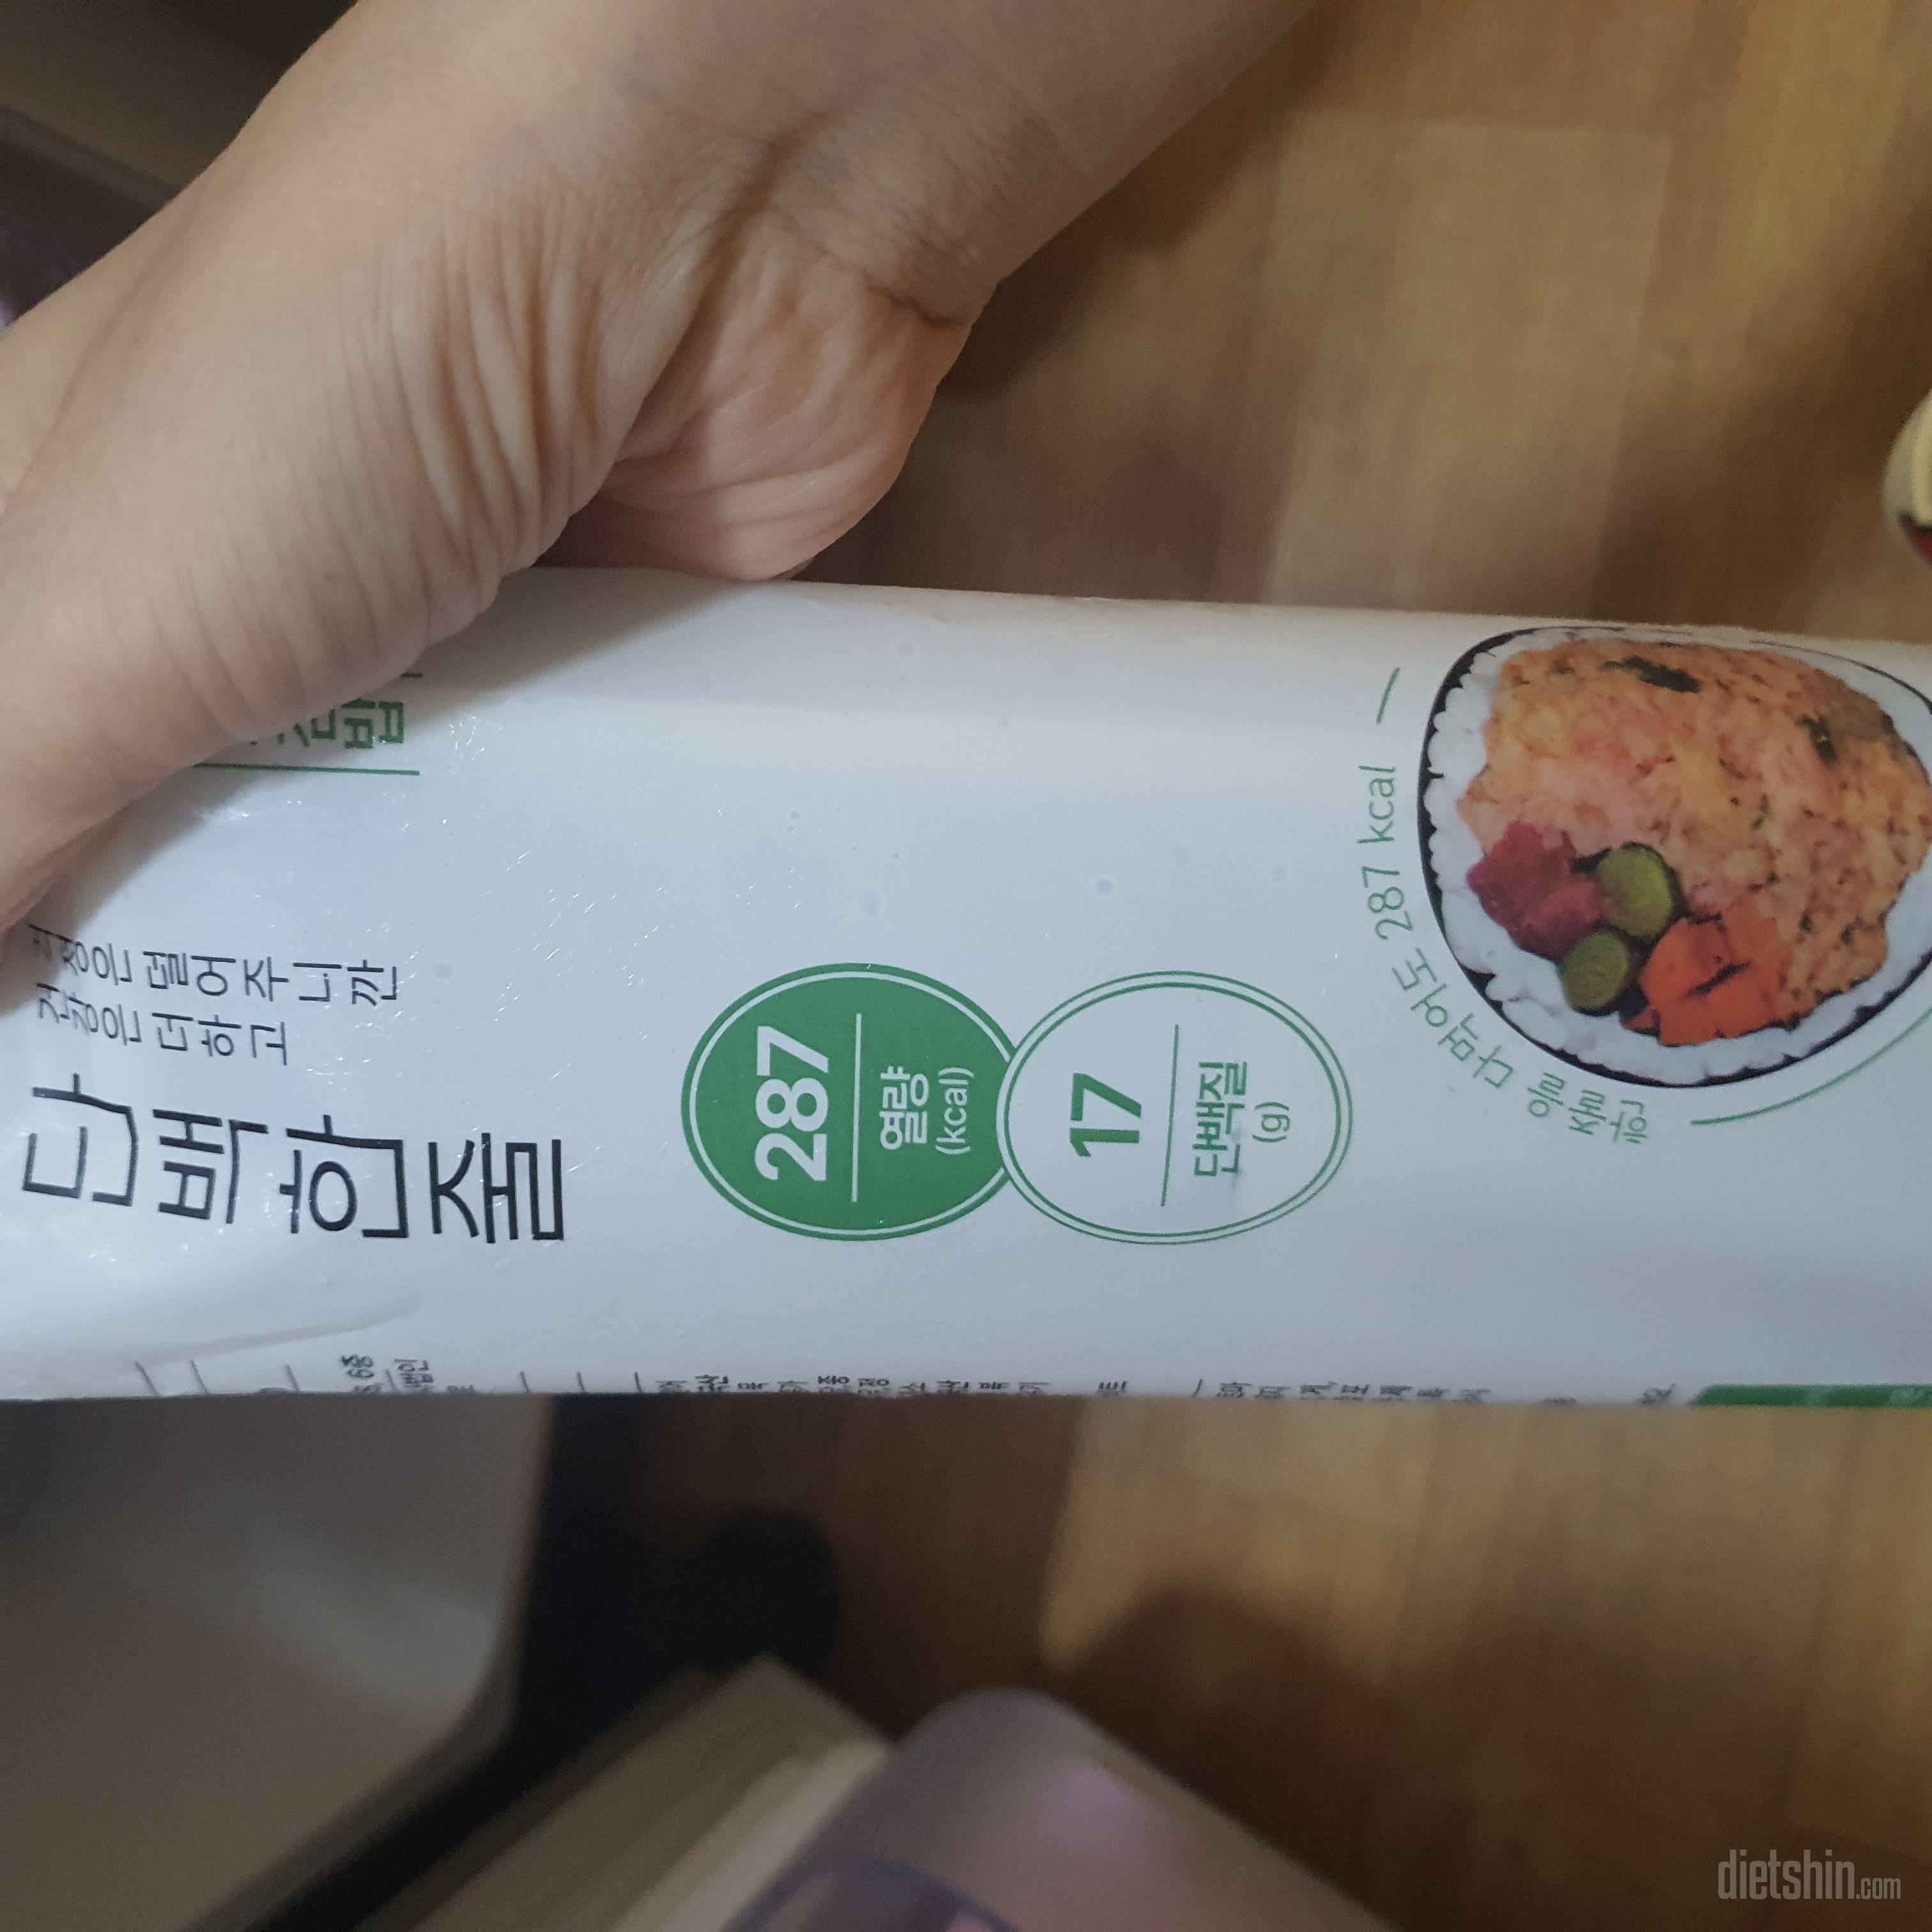 다이어트중 김밥이 땡길때 먹으려고 구